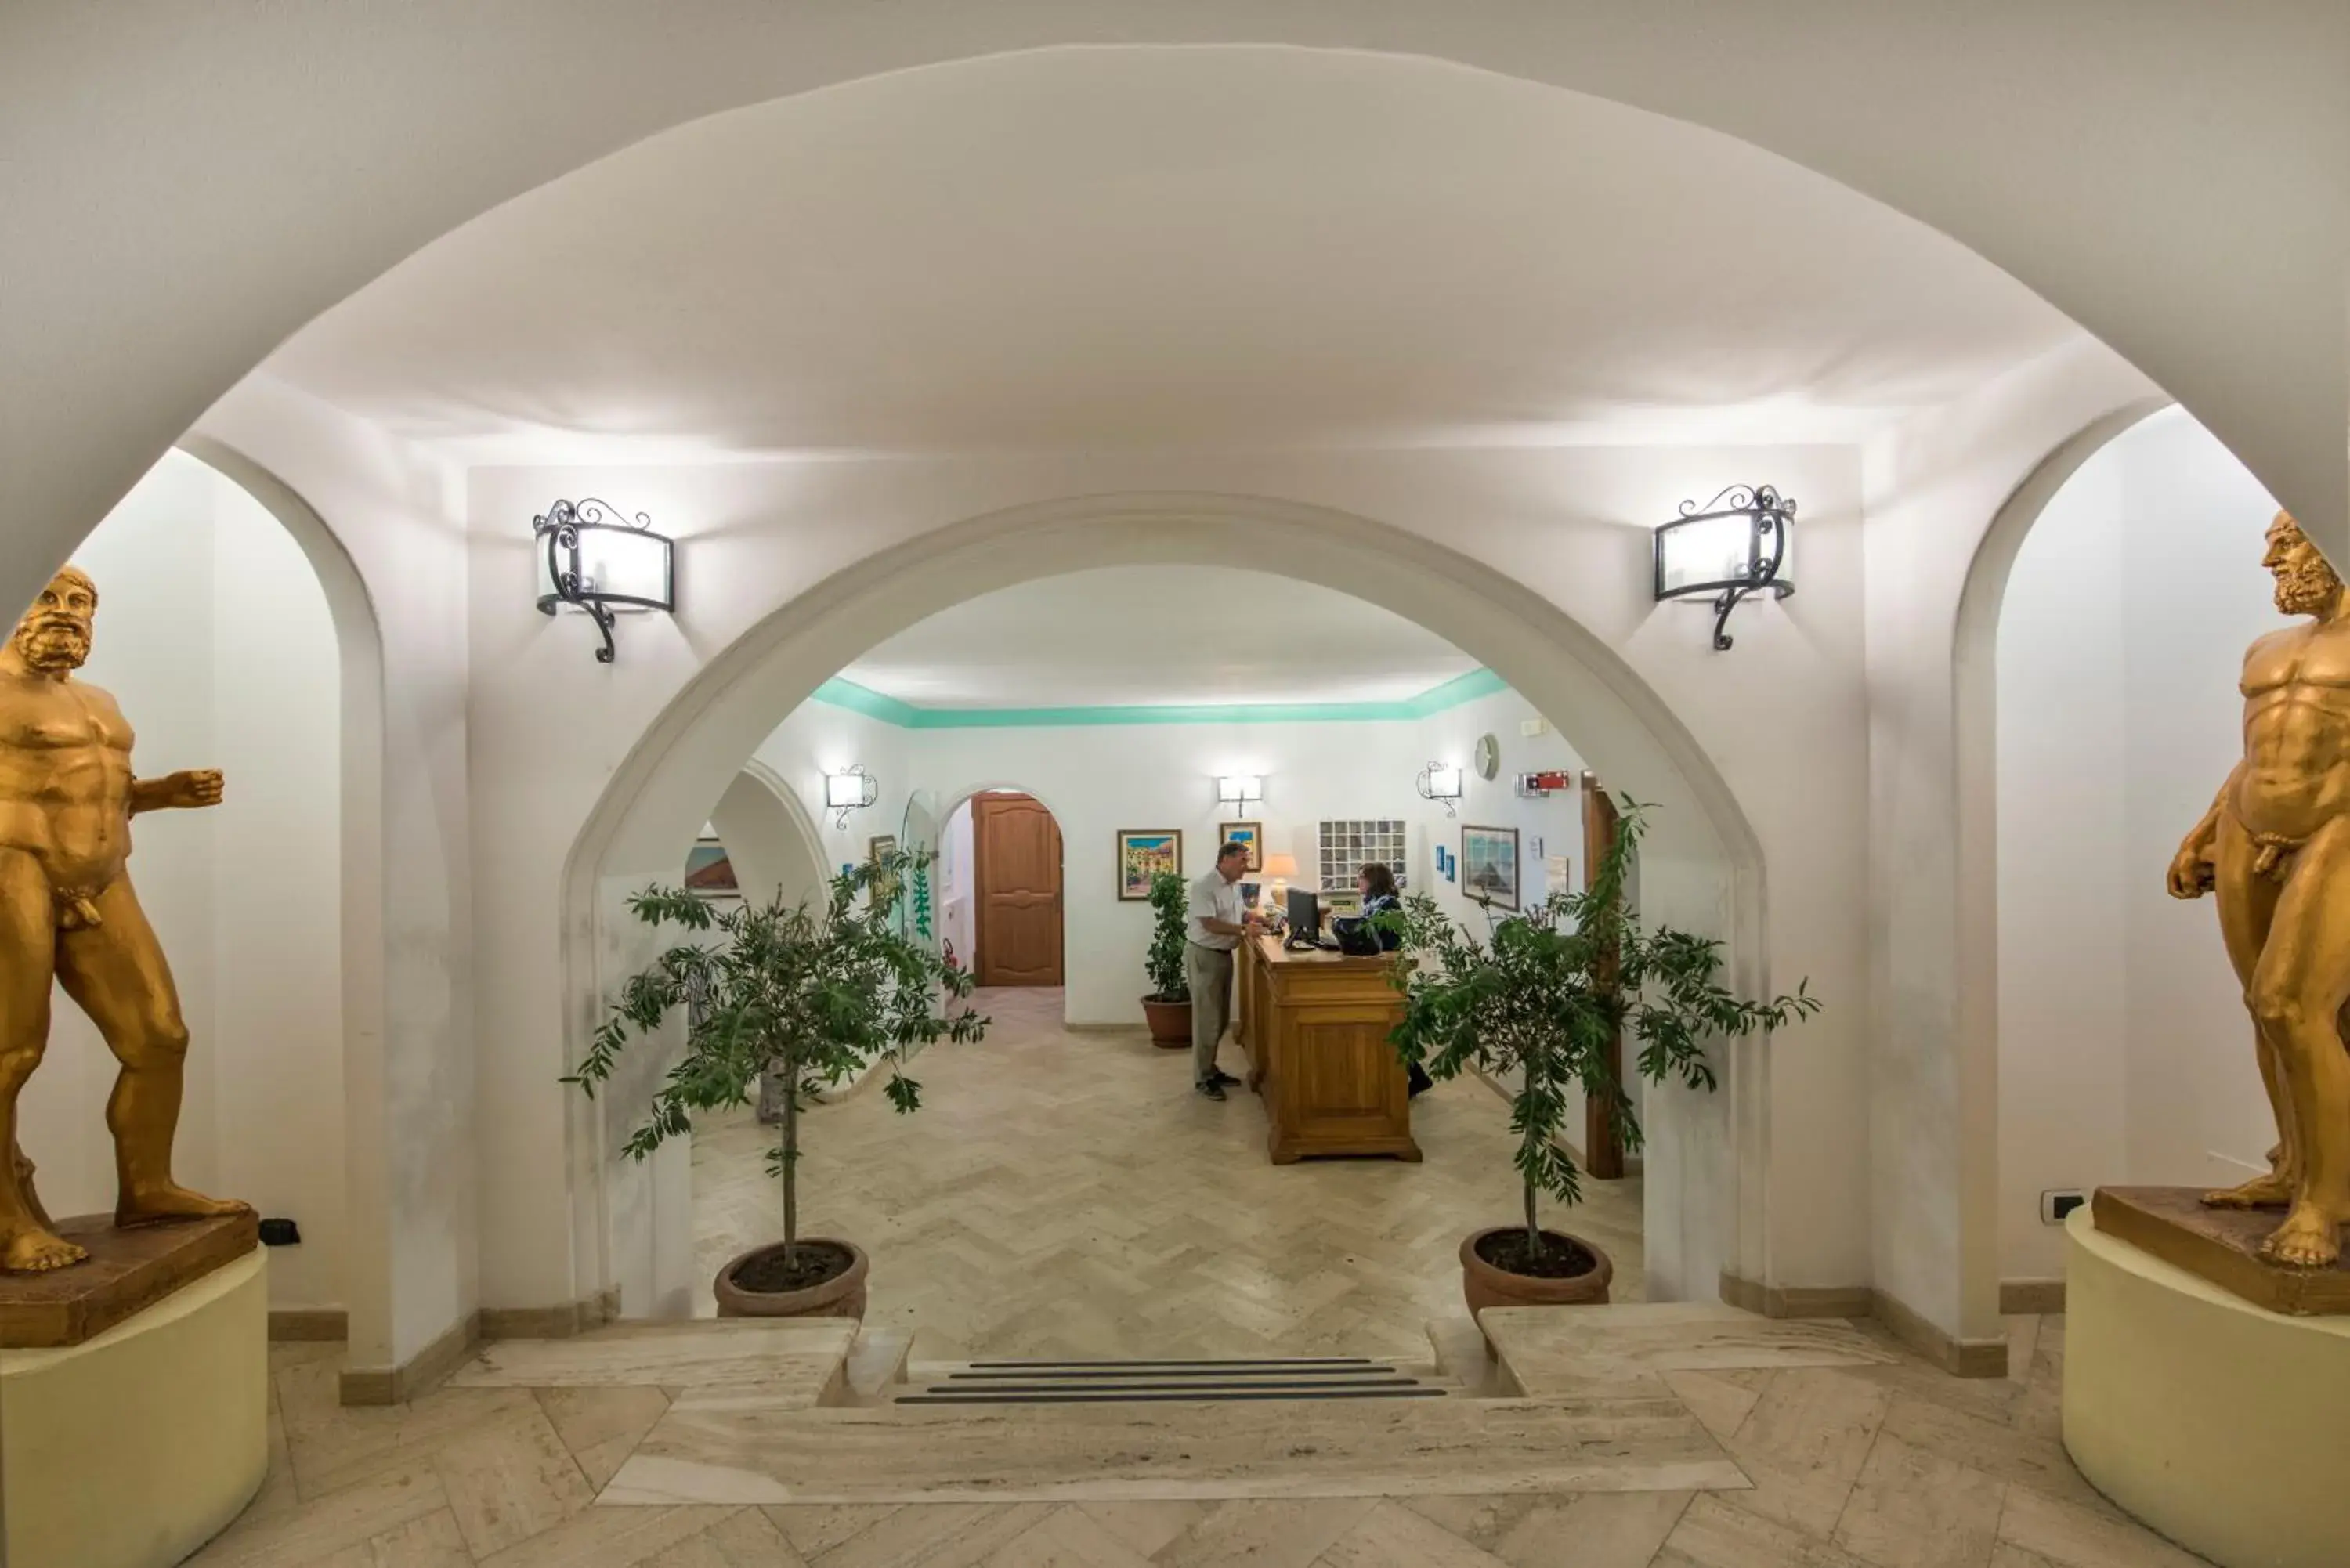 Lobby or reception, Lobby/Reception in Hotel Ossidiana Stromboli Center